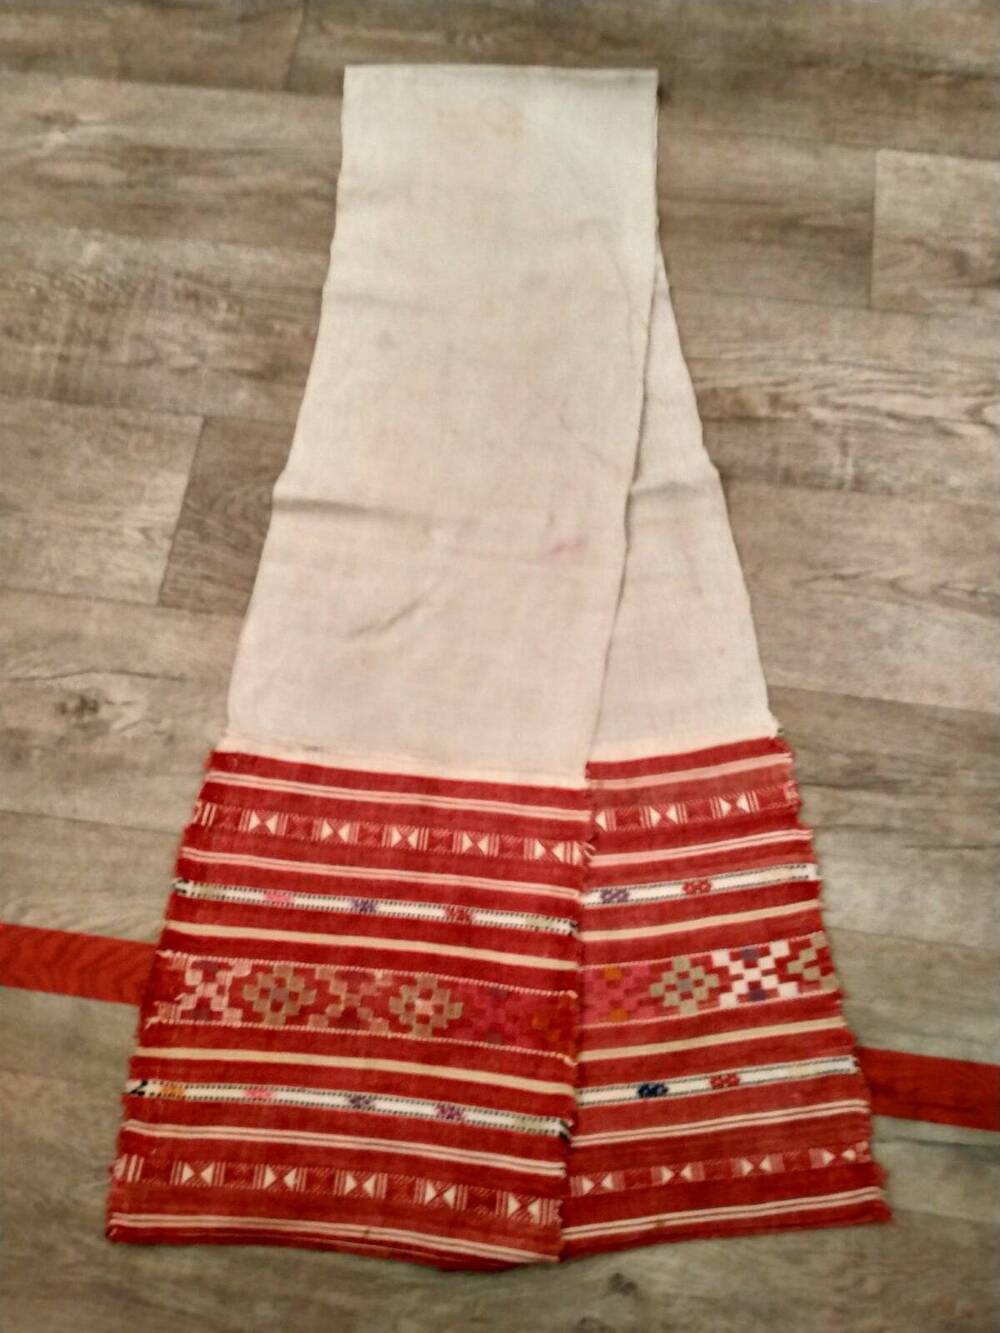 Полотенце - сурбан чувашское, самотканое, цельное, белое, концы пришиты: на красном фоне геометрический узор шерстяными нитями